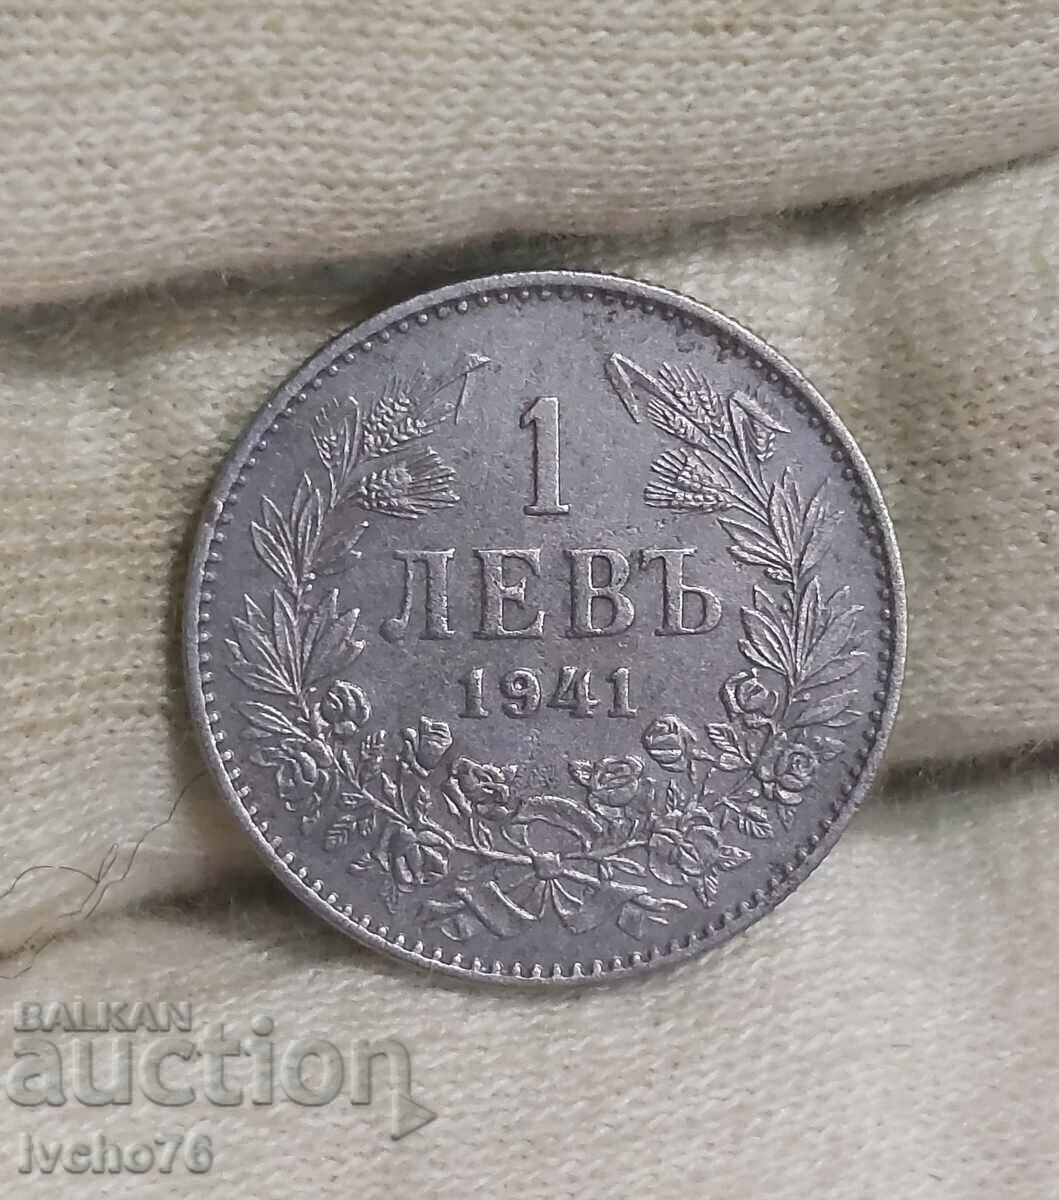 Monedă veche bulgară de 1 BGN. 1941